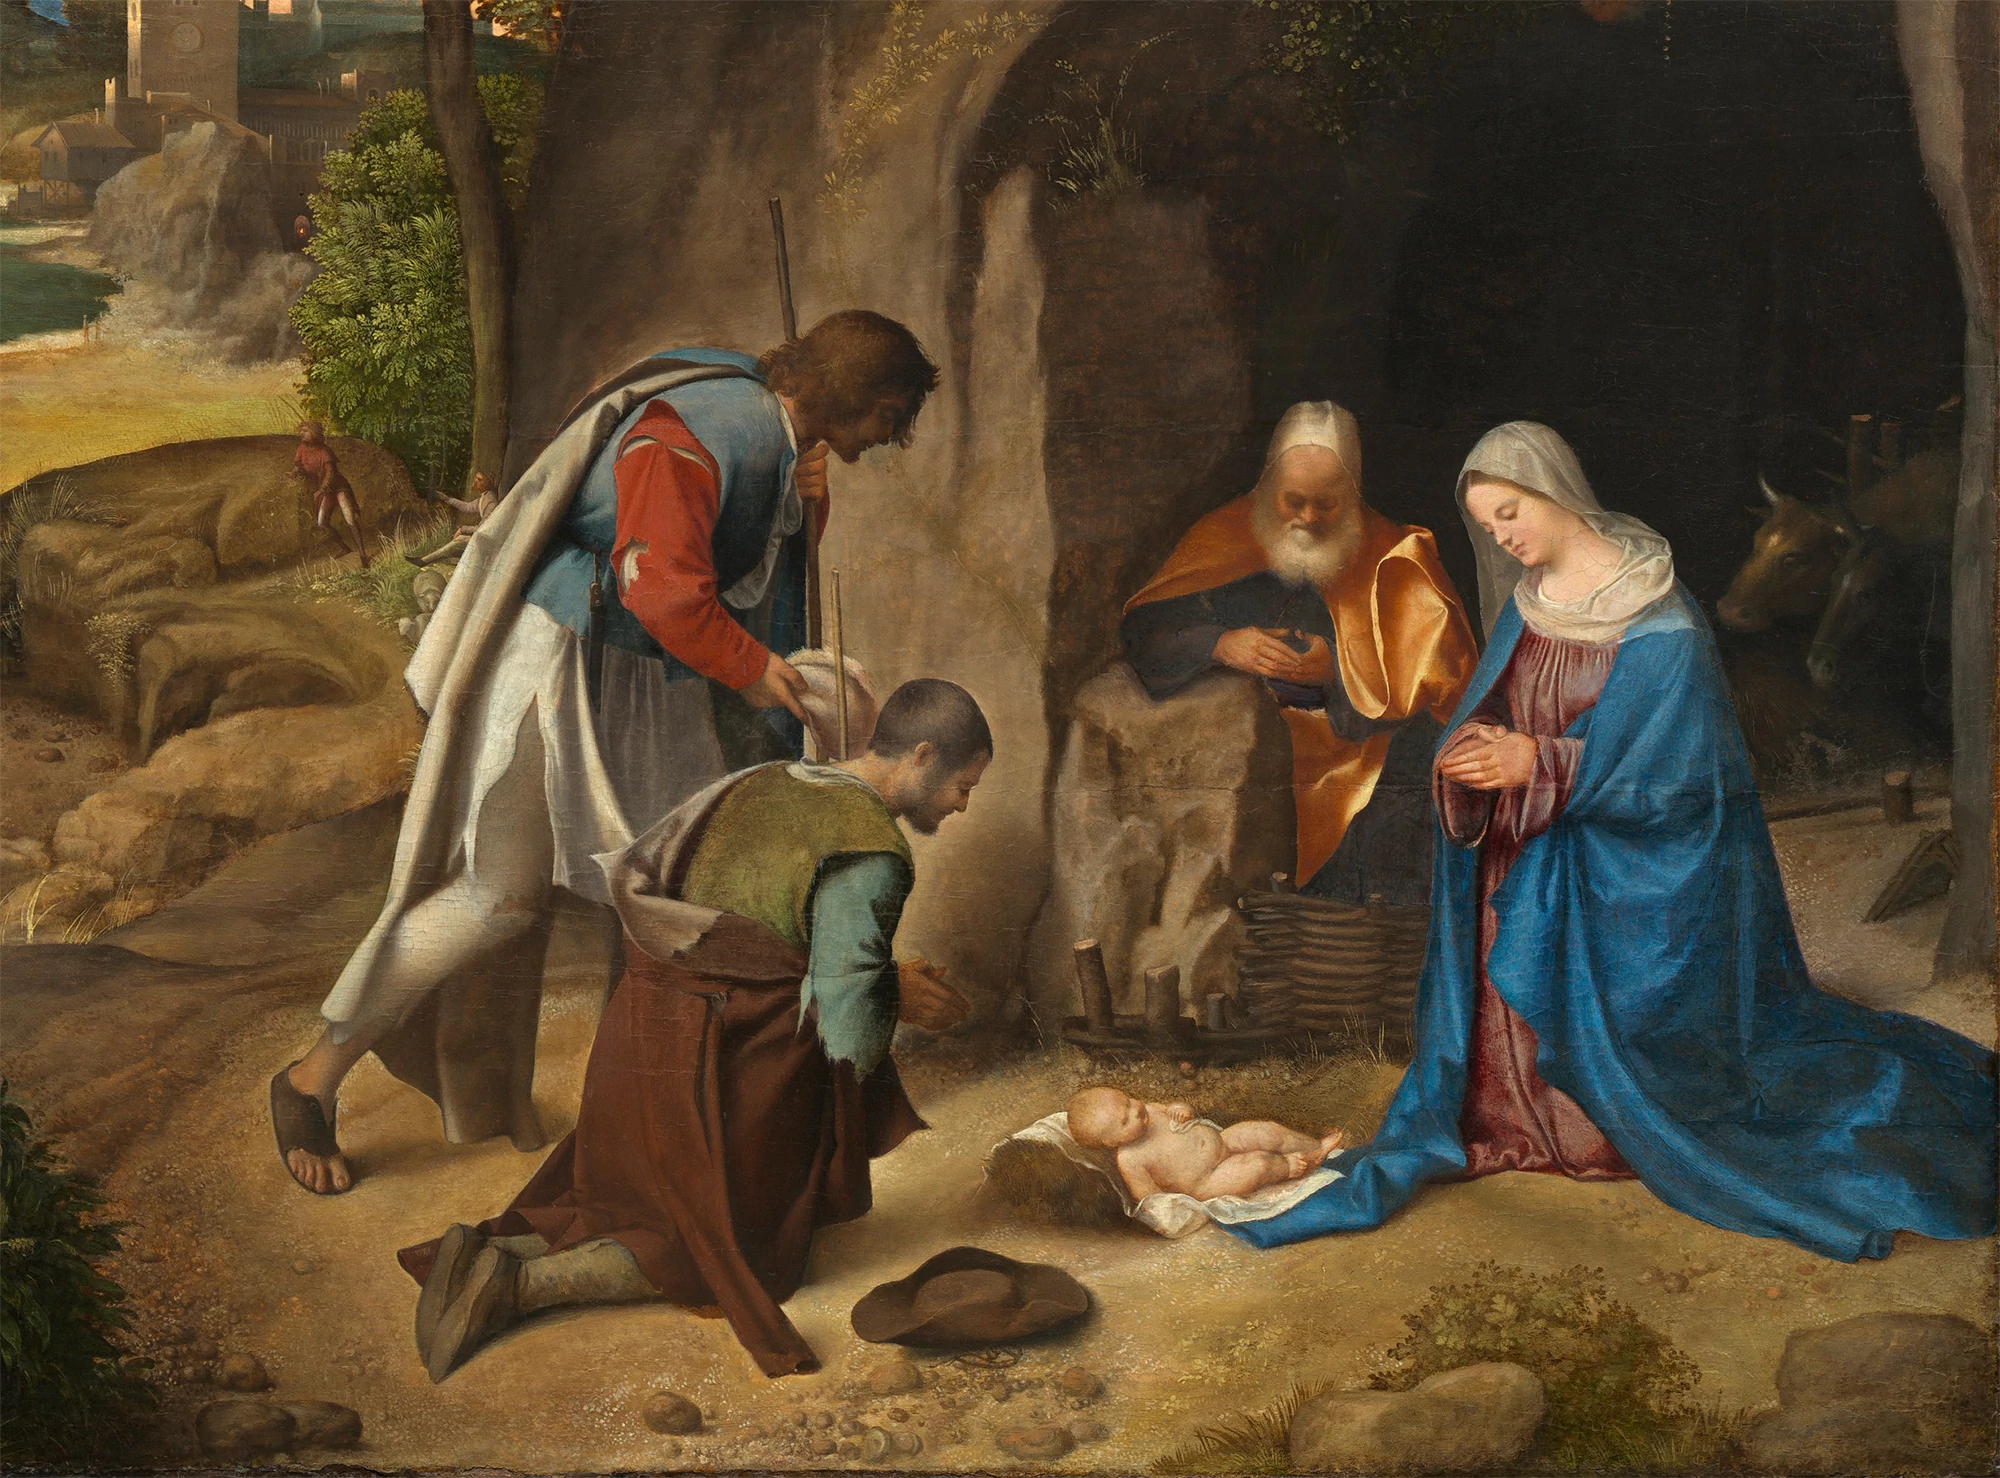 Giorgione, The Artists